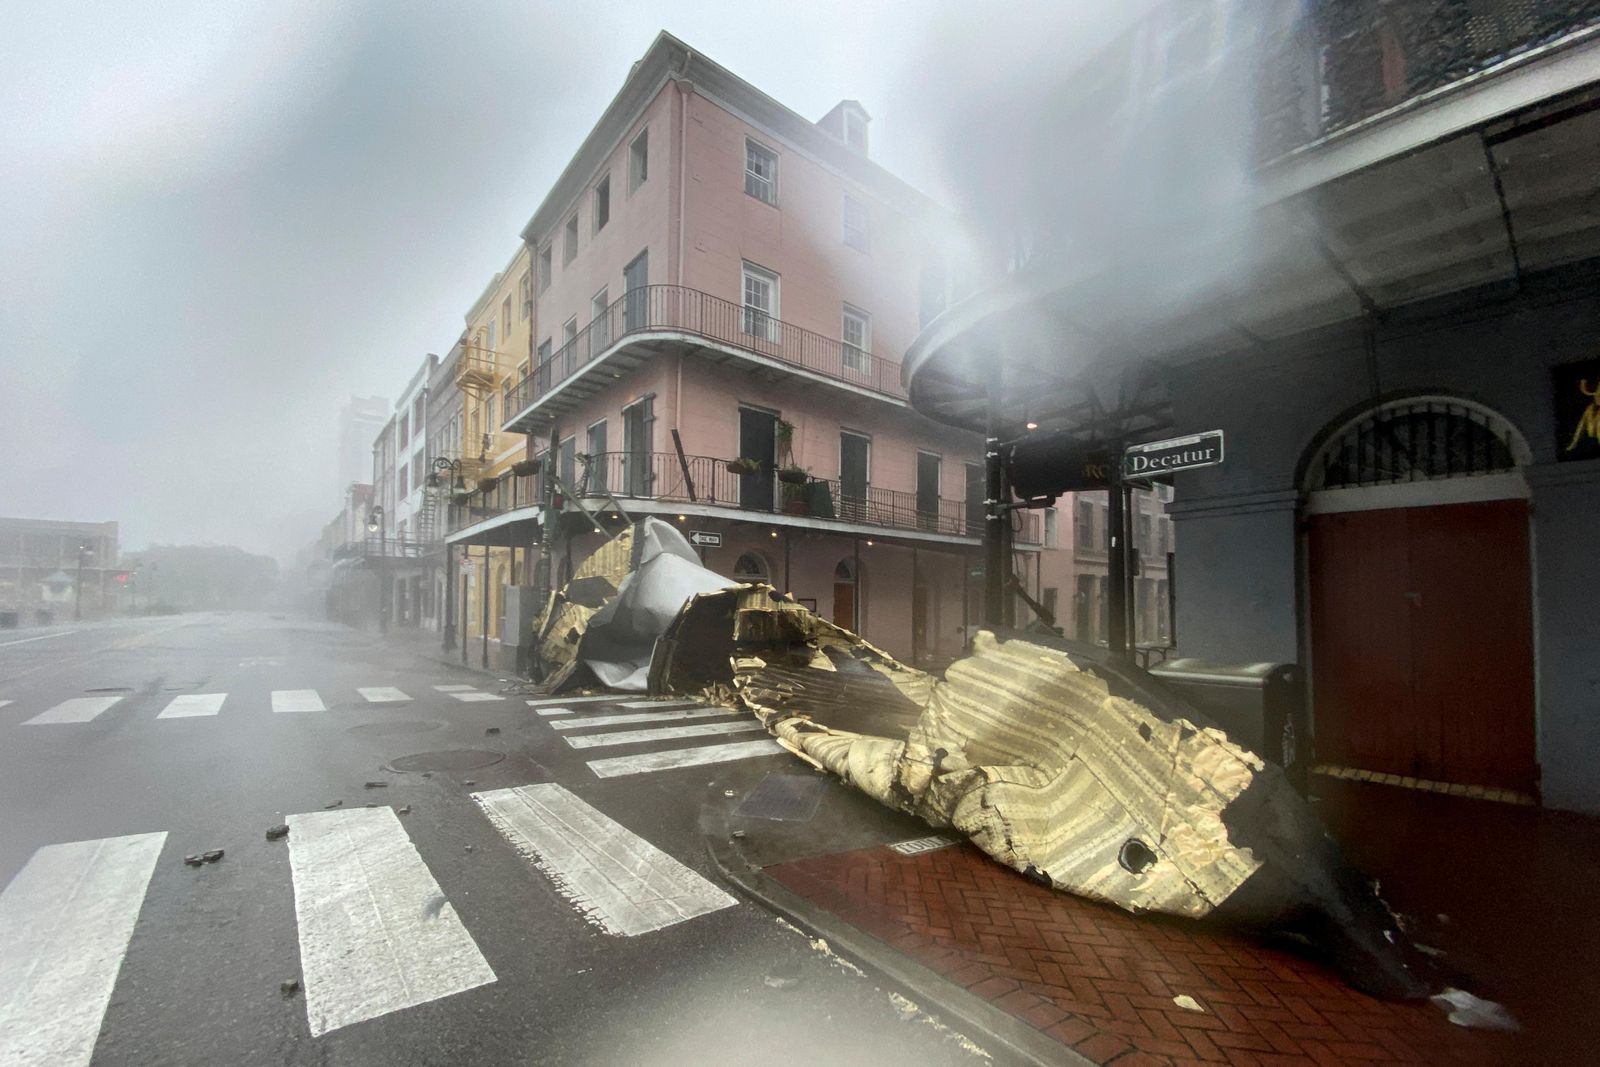 New Orleans - History, Louisiana Purchase & Hurricane Katrina